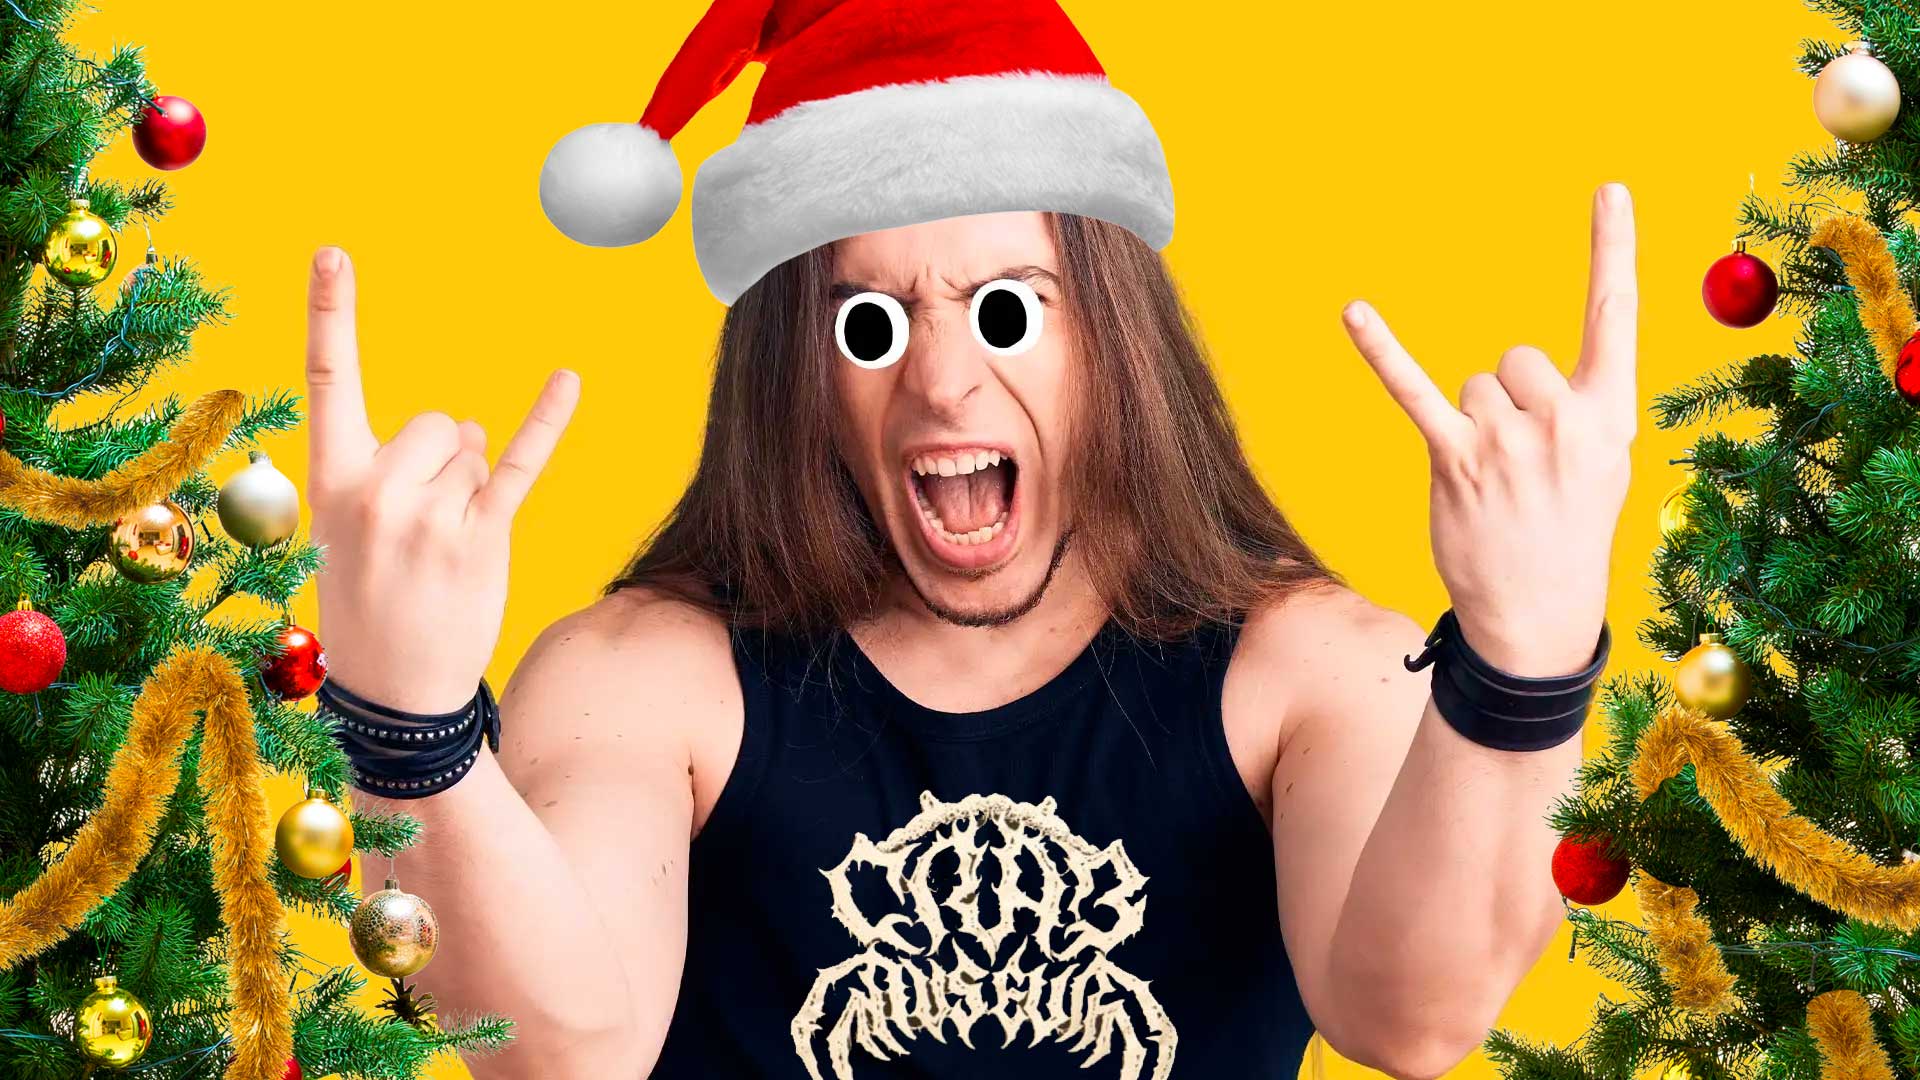 A heavy metal fan having a lovely festive time